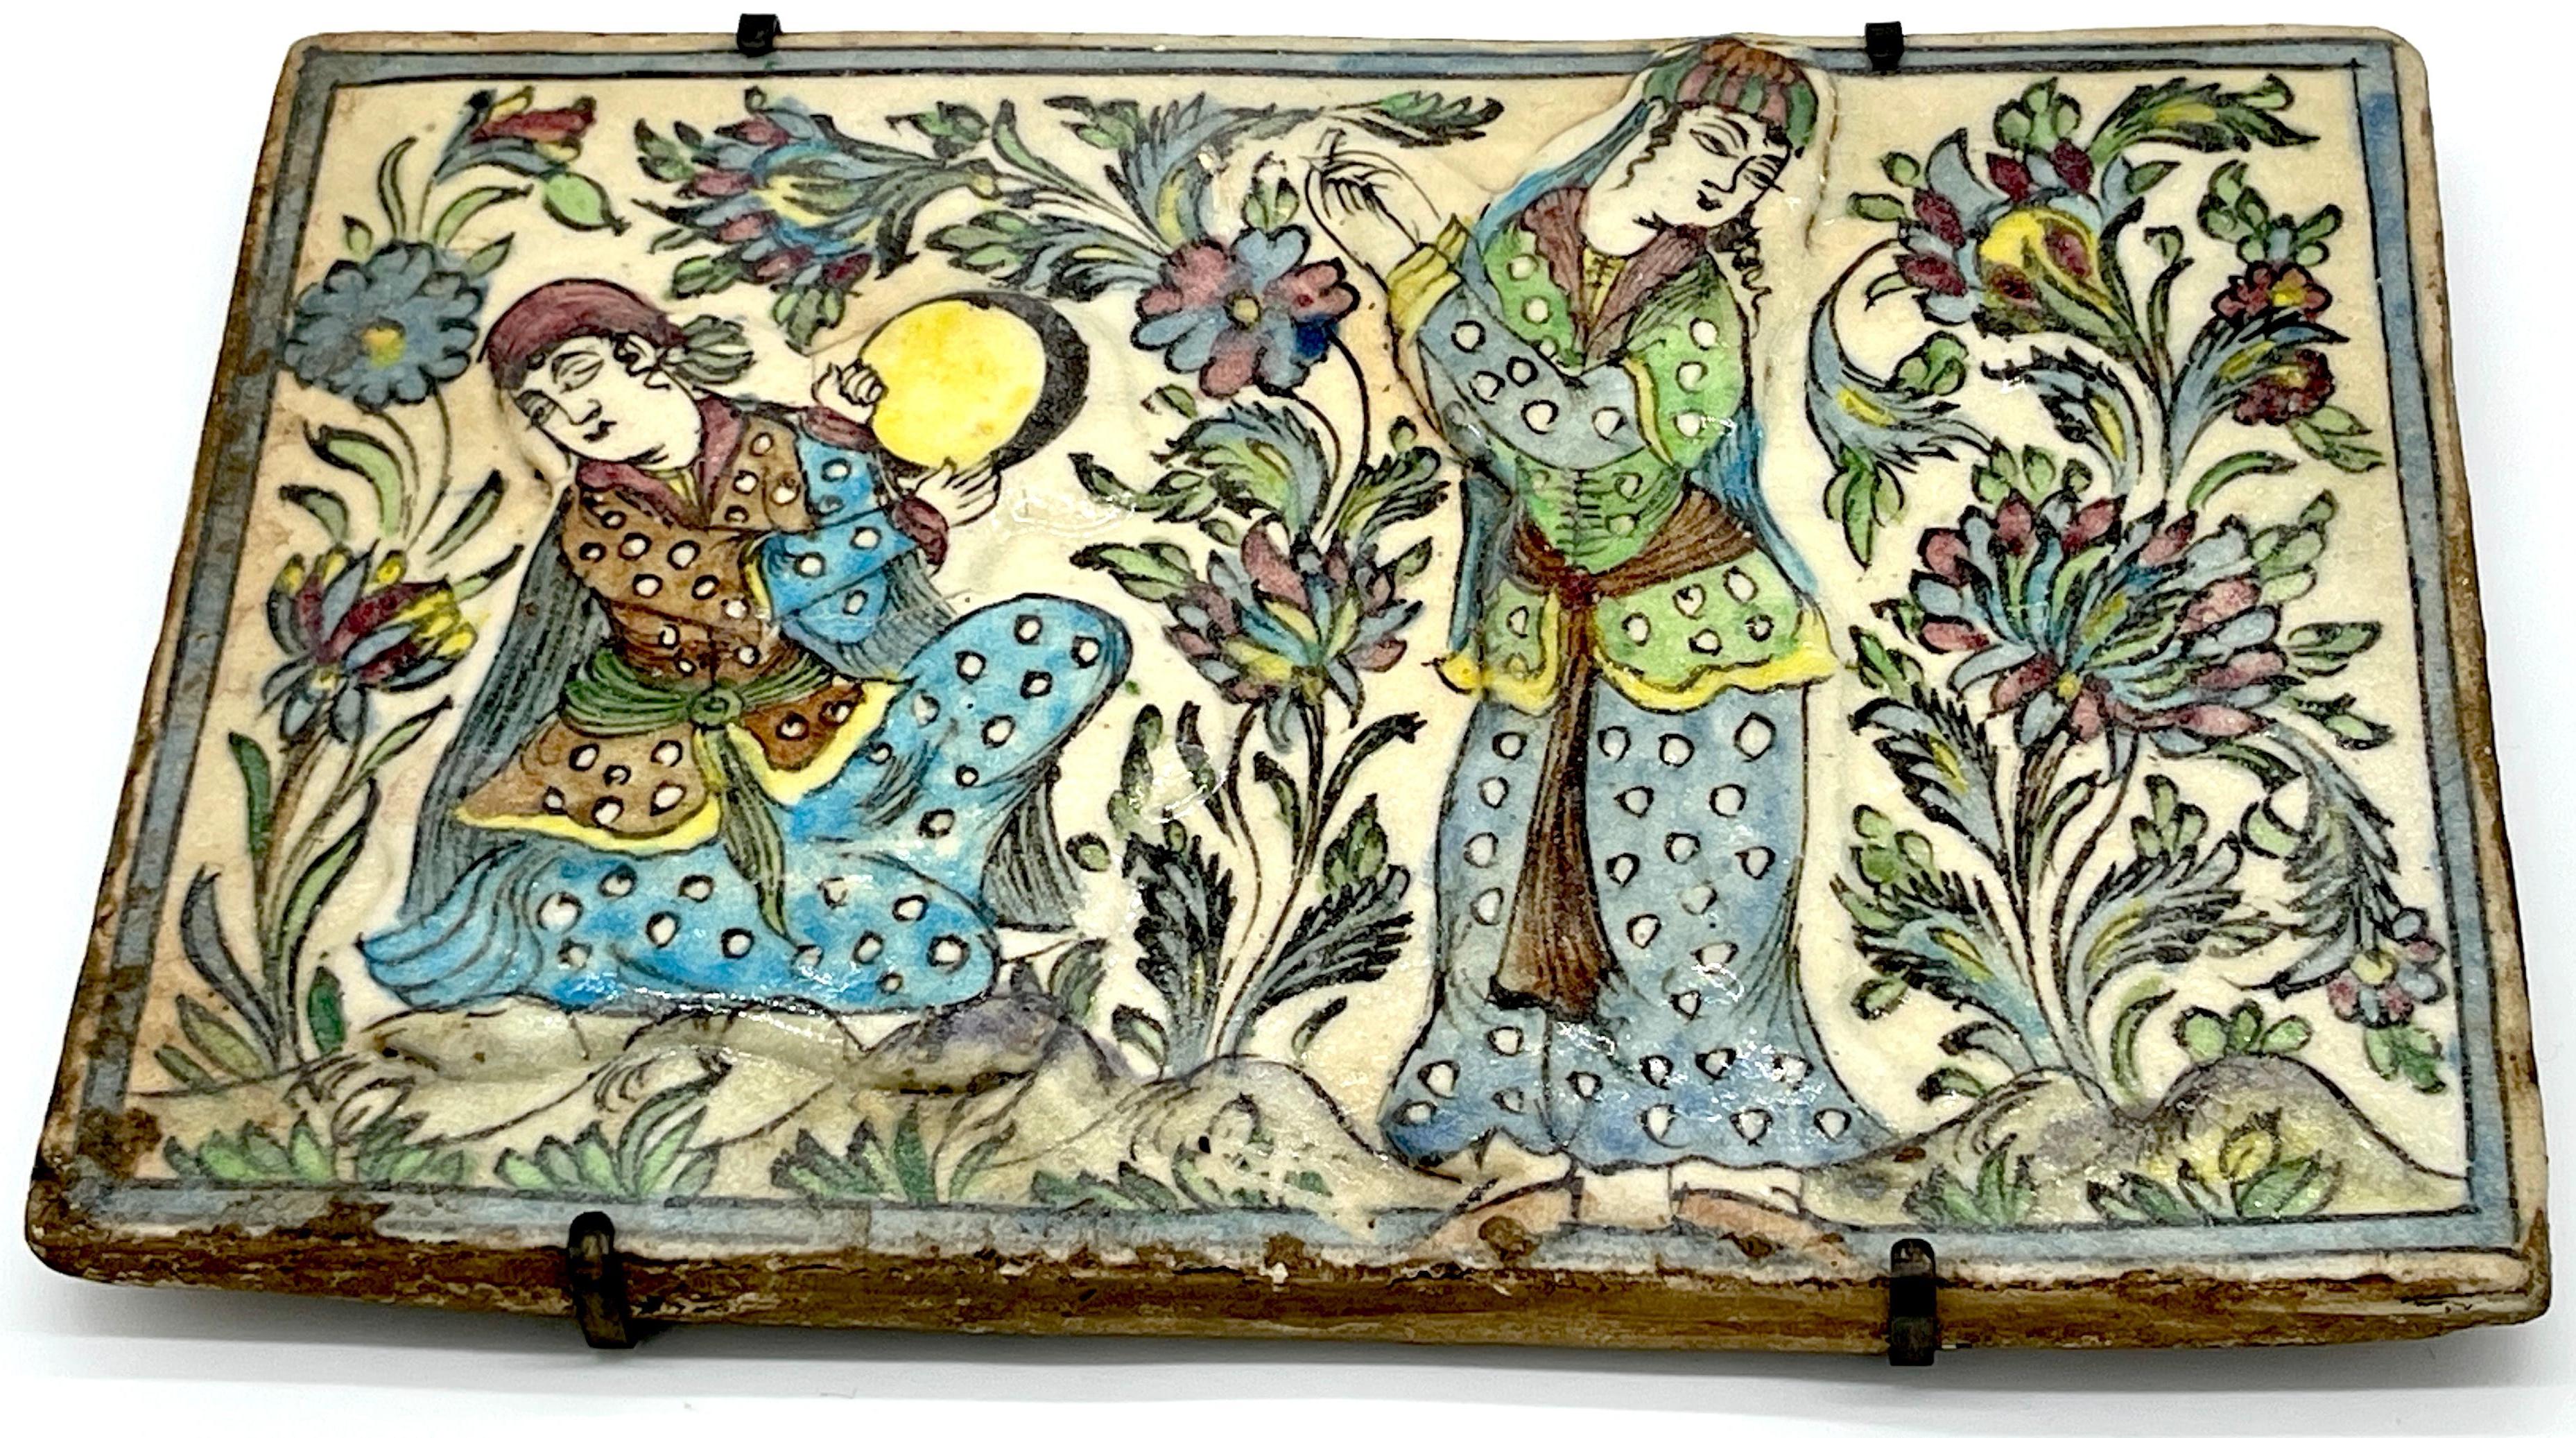 Große Bildfliese aus Iznik-Keramik aus dem 19. Jahrhundert 'Jungfrauen im Garten'.
Asien, ein Beispiel aus dem 19. Jahrhundert oder älter 

Ein fesselndes großes Beispiel aus dem 19. Jahrhundert, diese Iznik Keramik bildliche Fliese mit dem Titel